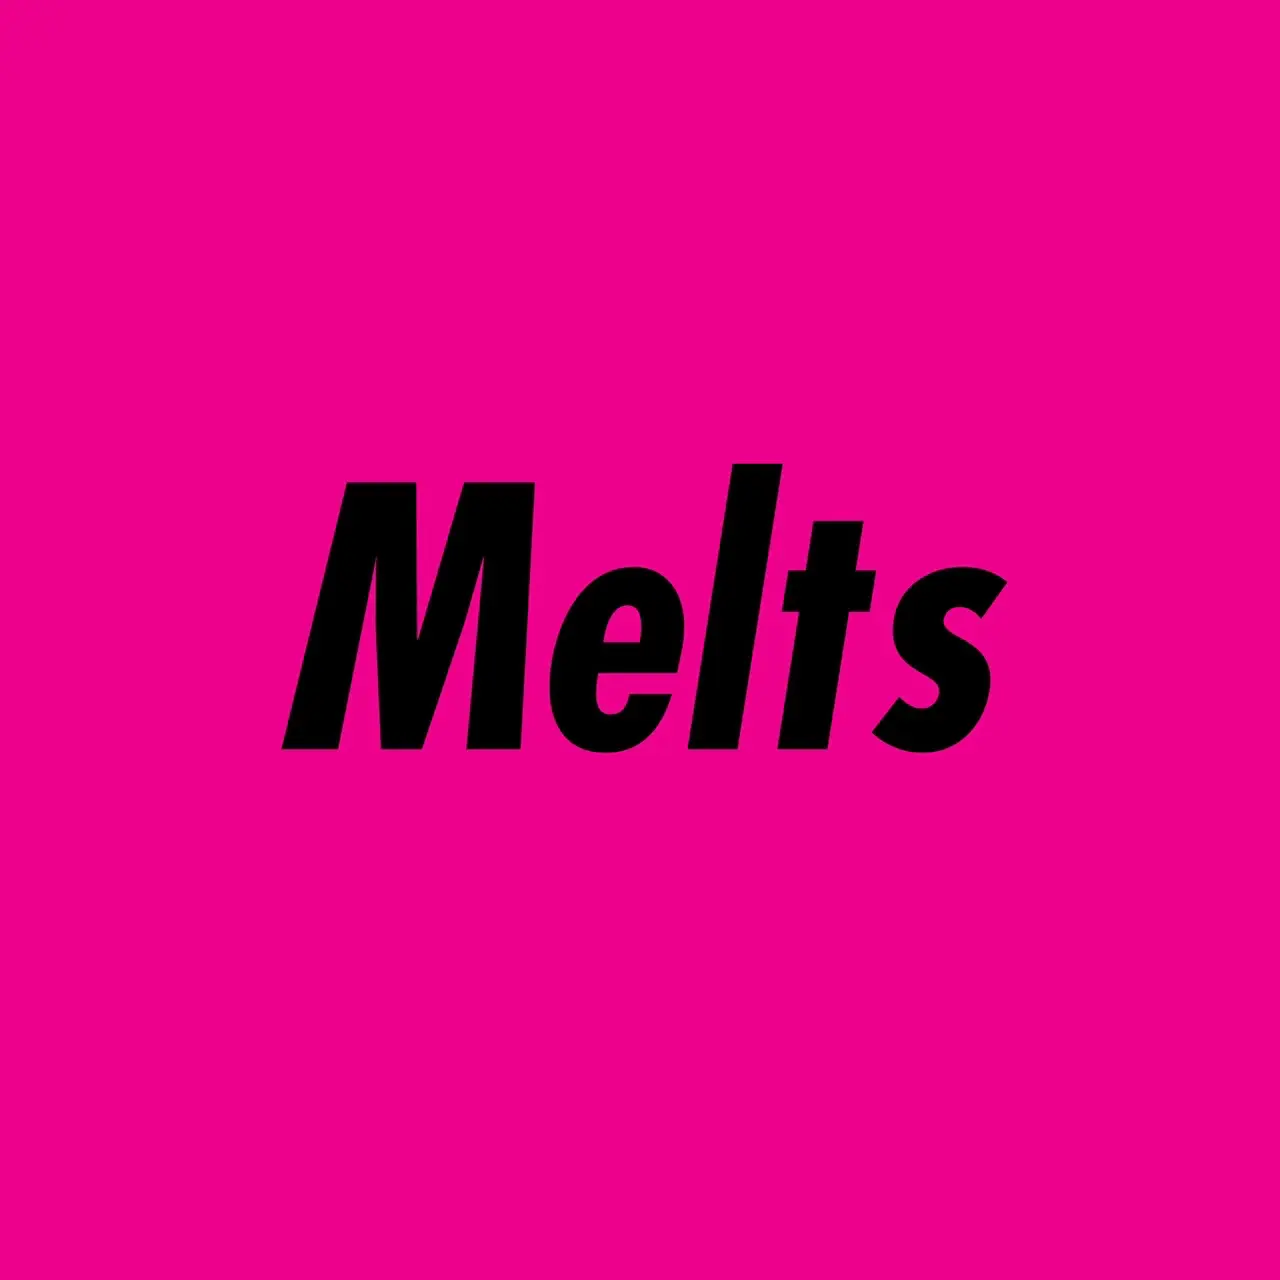 melts